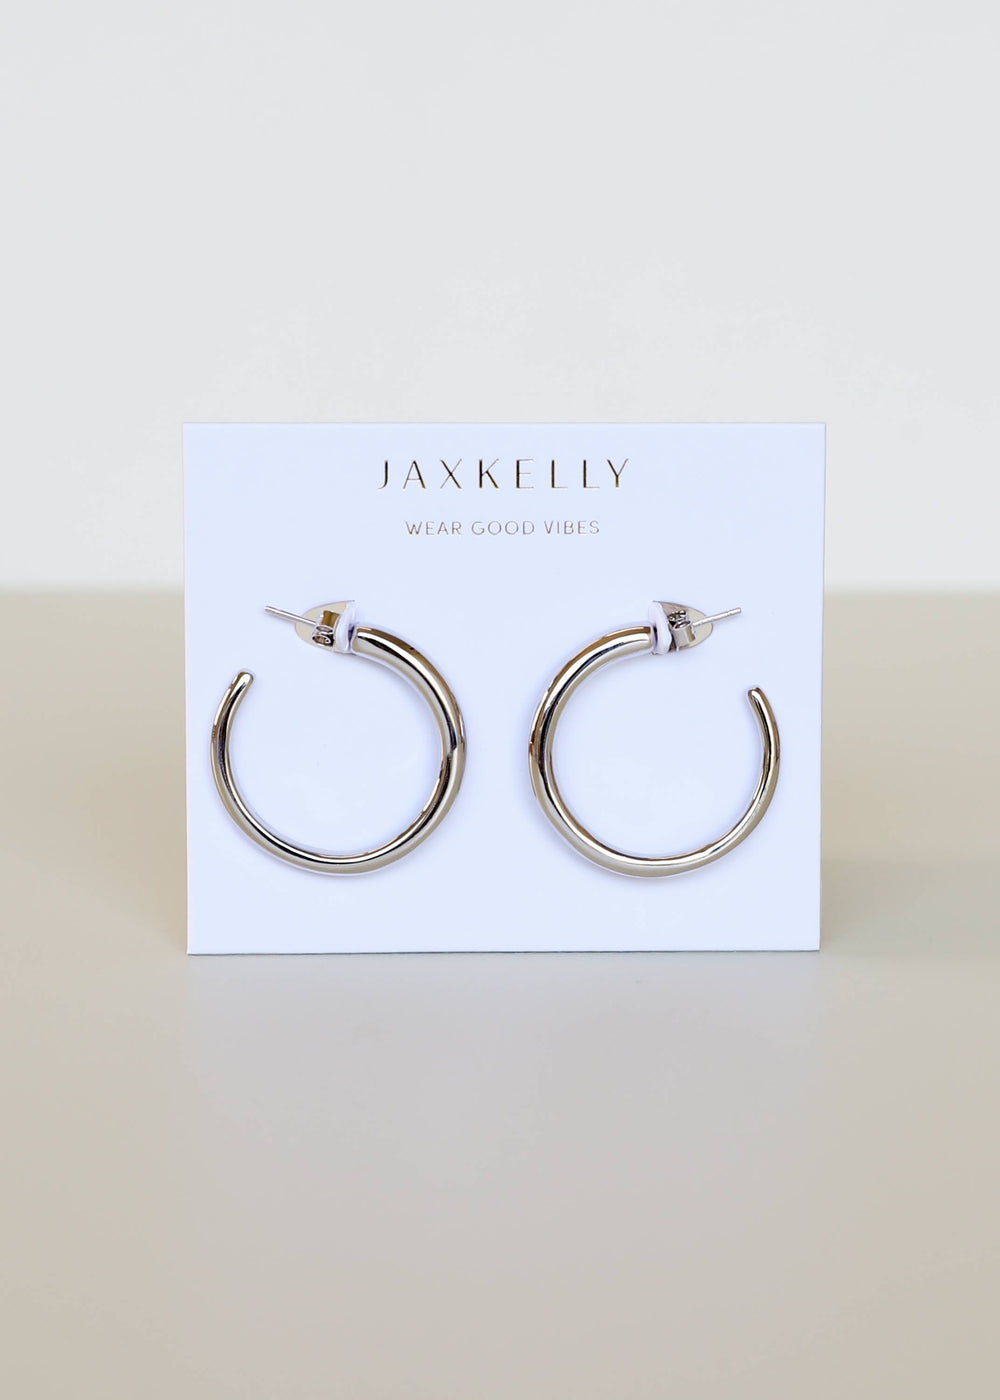 JaxKelly Earrings Everyday Silver Hoop - Medium